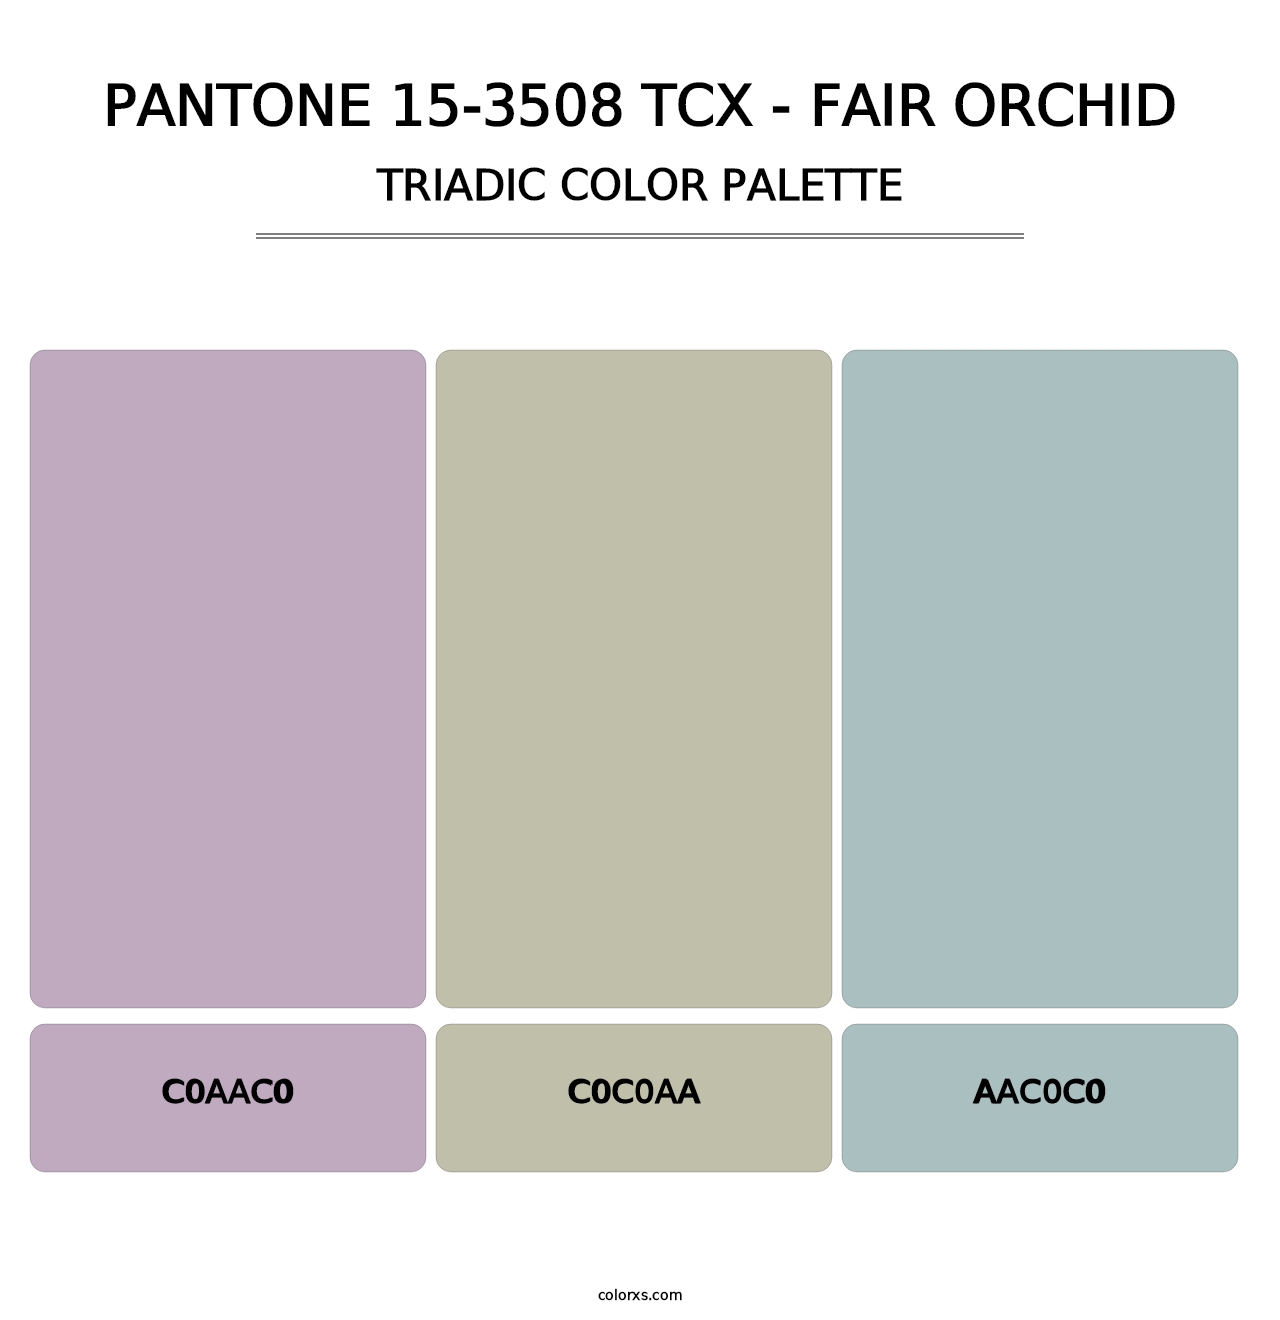 PANTONE 15-3508 TCX - Fair Orchid - Triadic Color Palette